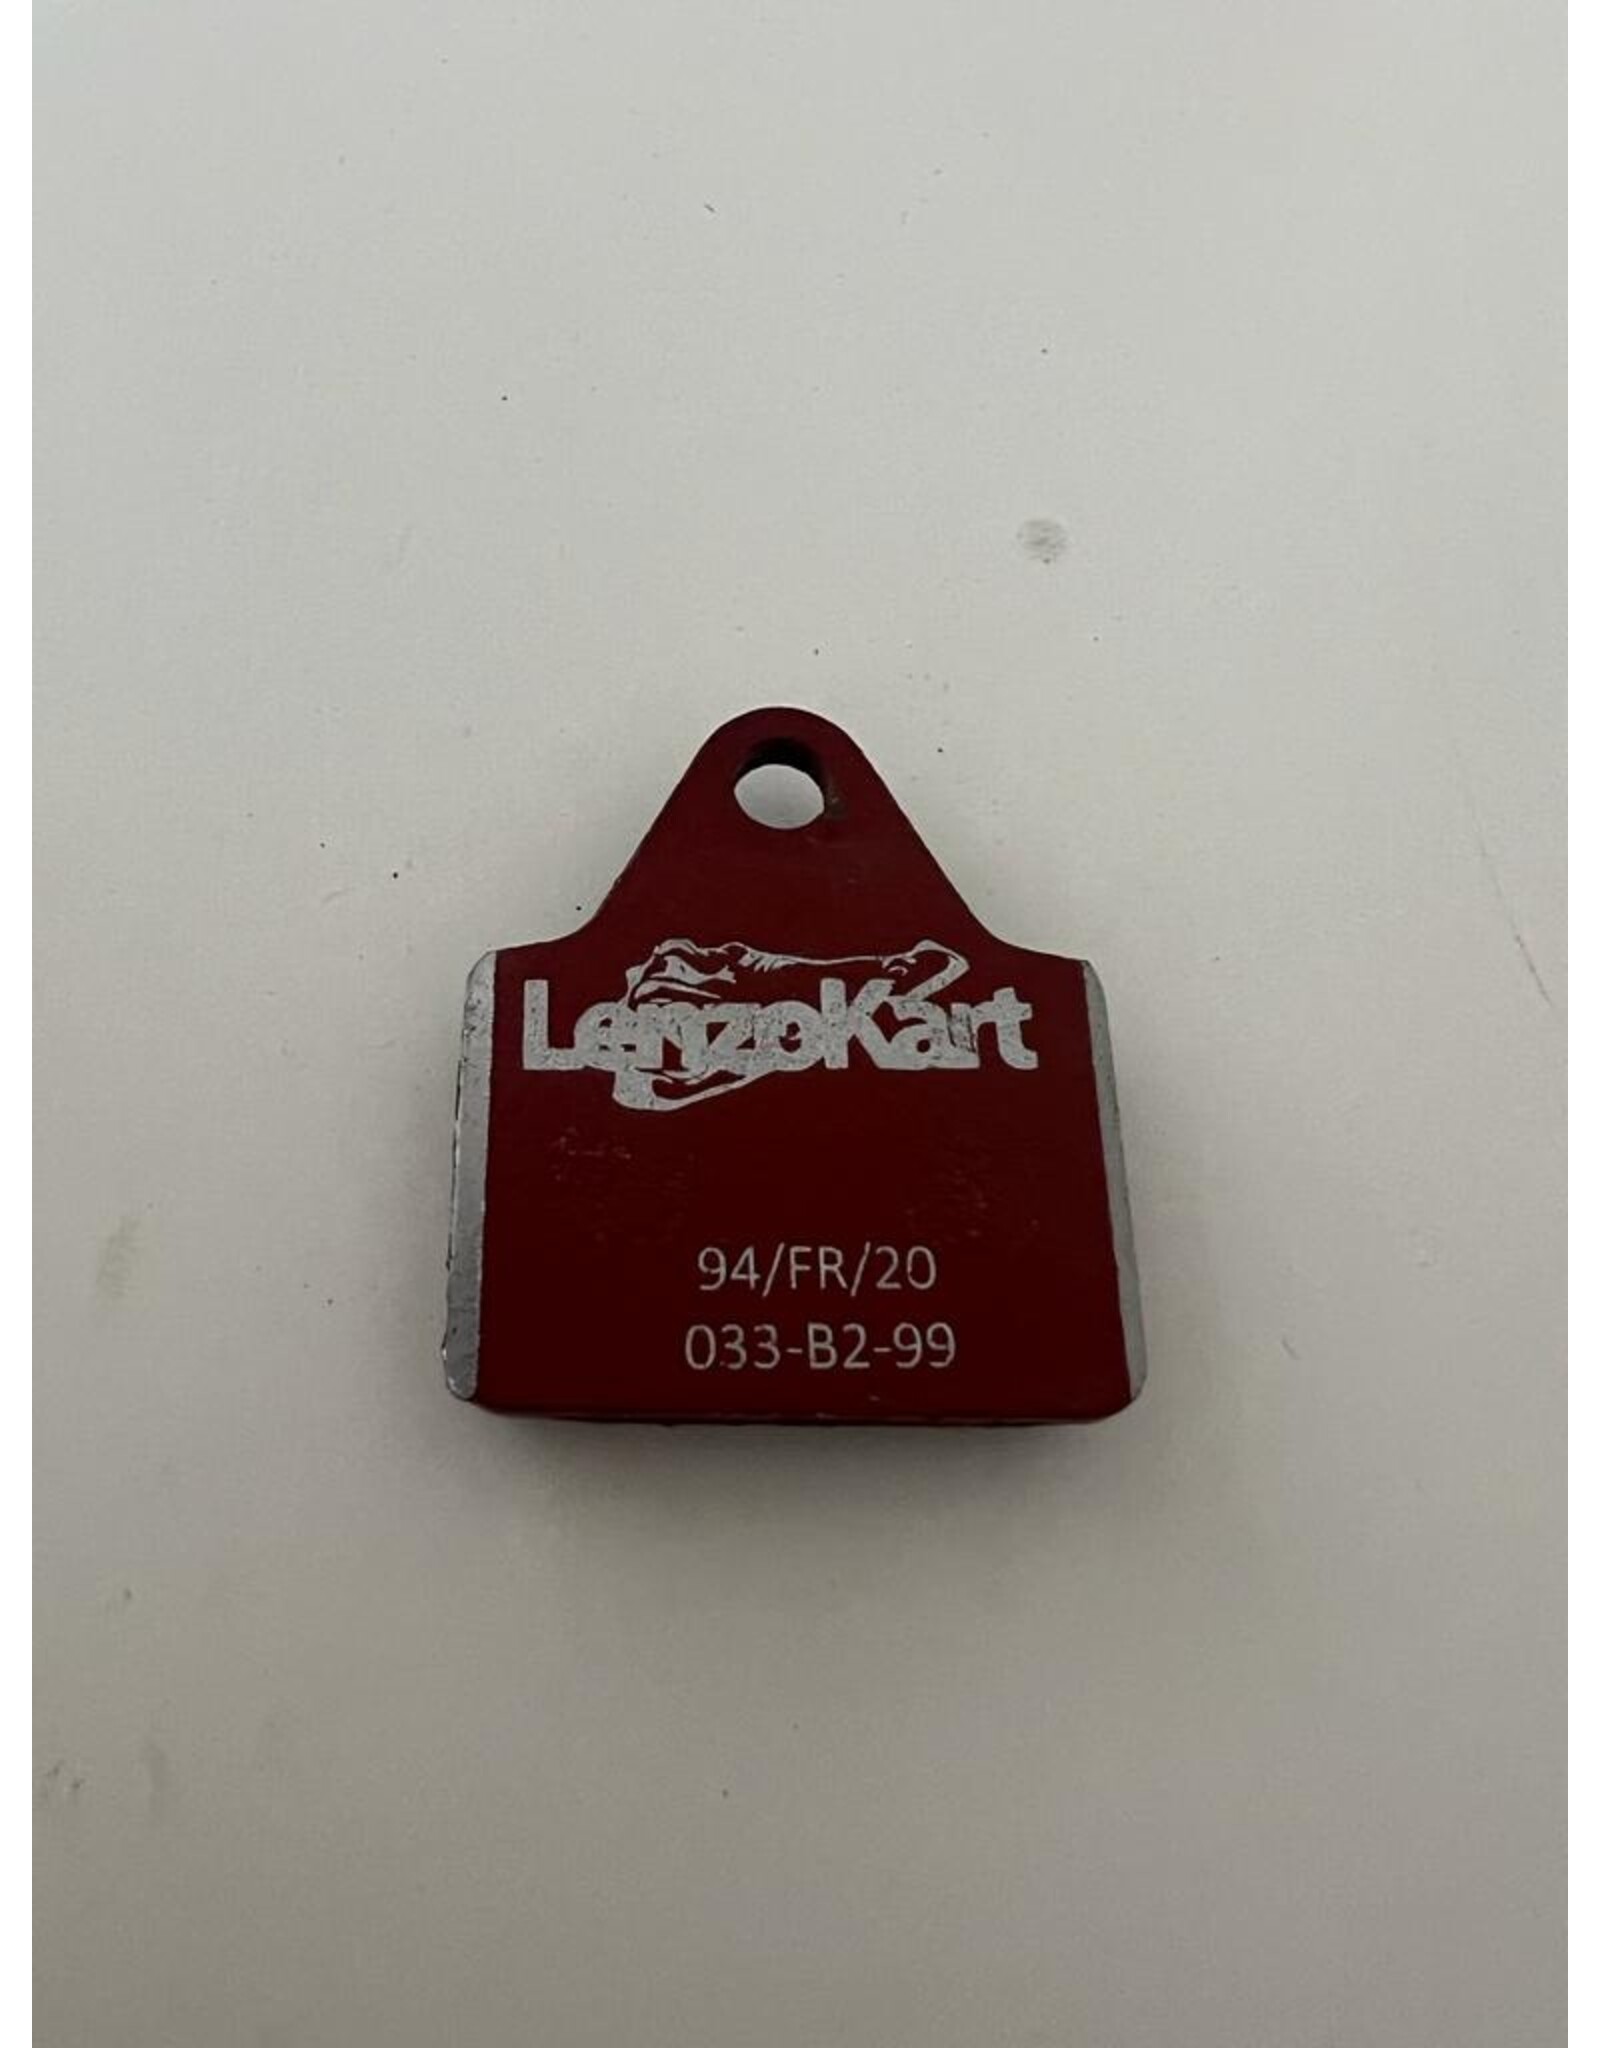 LenzoKart LenzoKart brake pad soft mini red LKF12